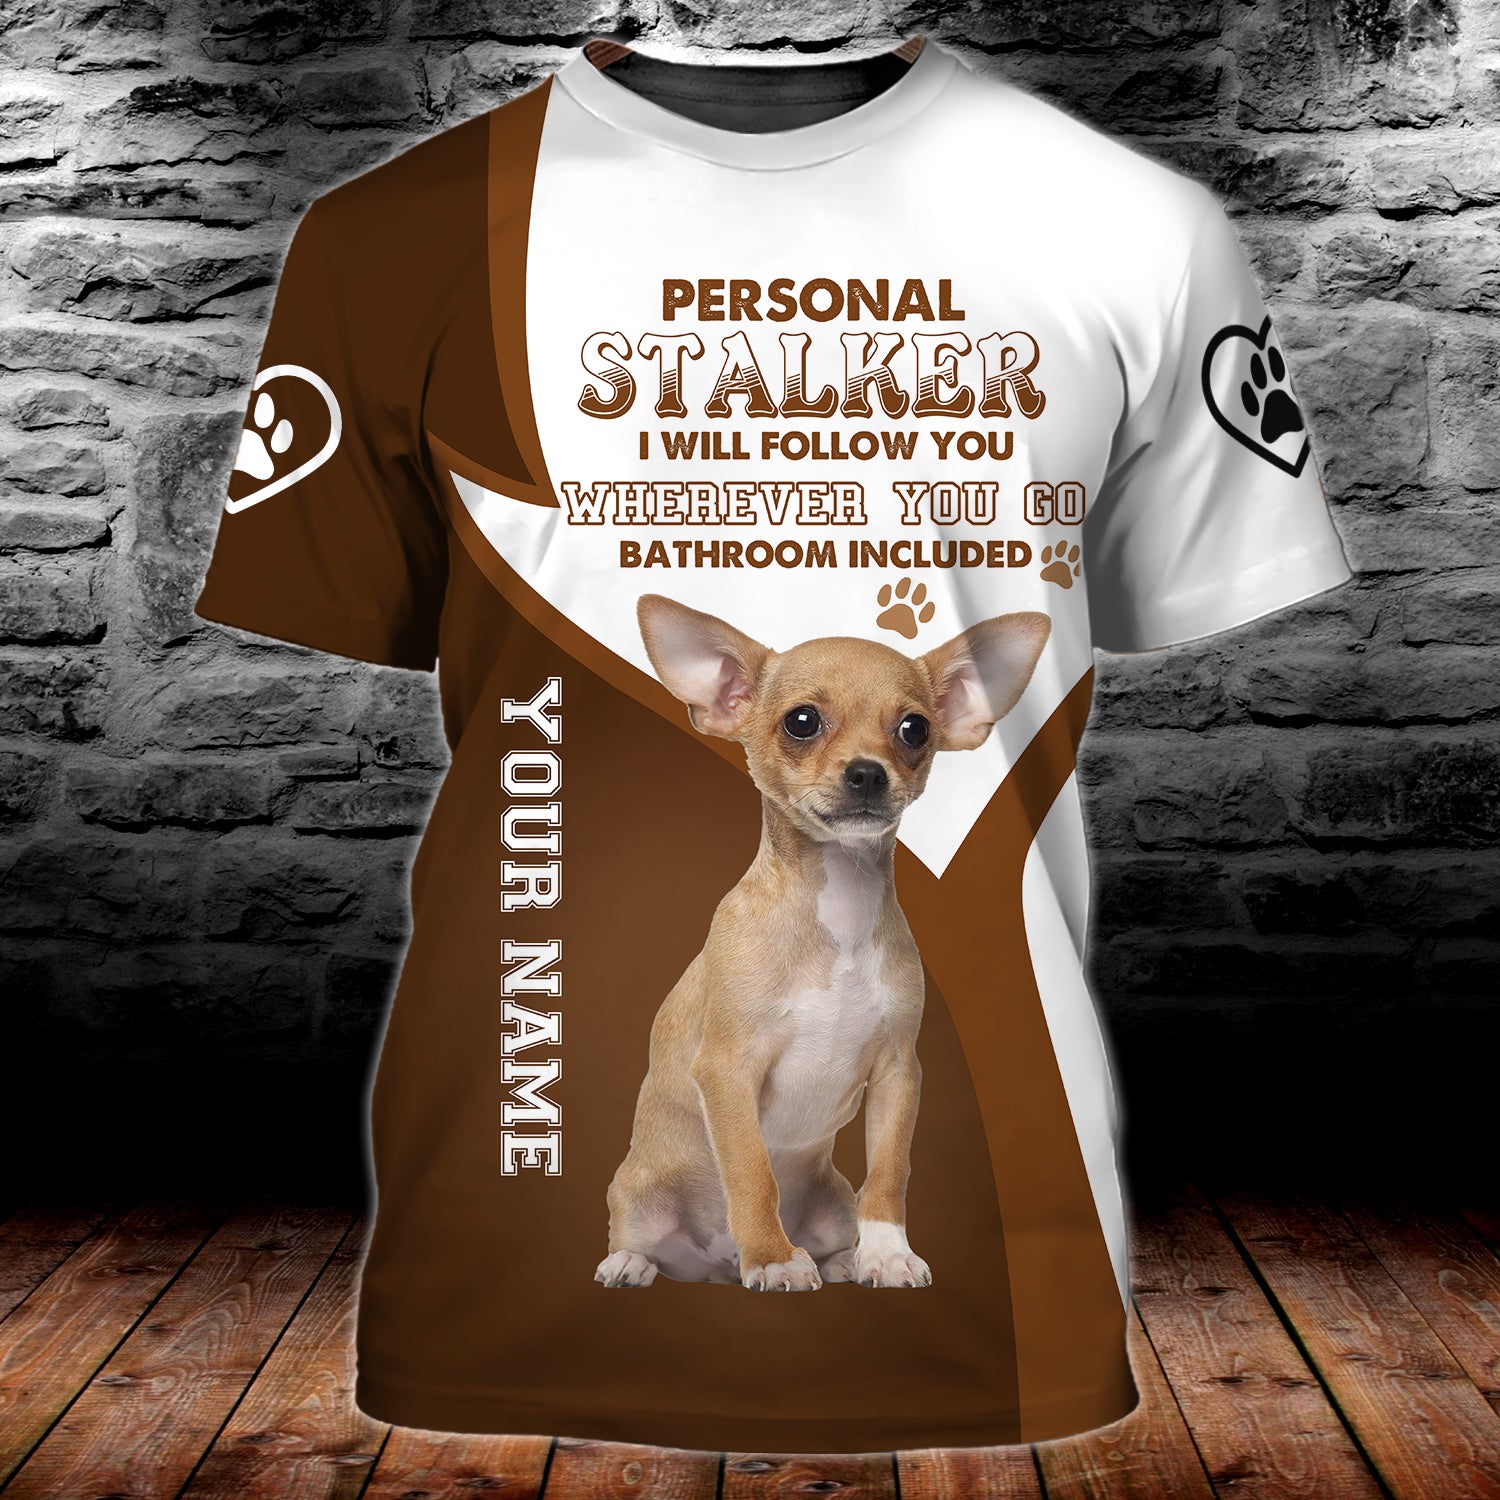 Personal Stalker Chihuahua - Personalized Name 3D Tshirt - QB95